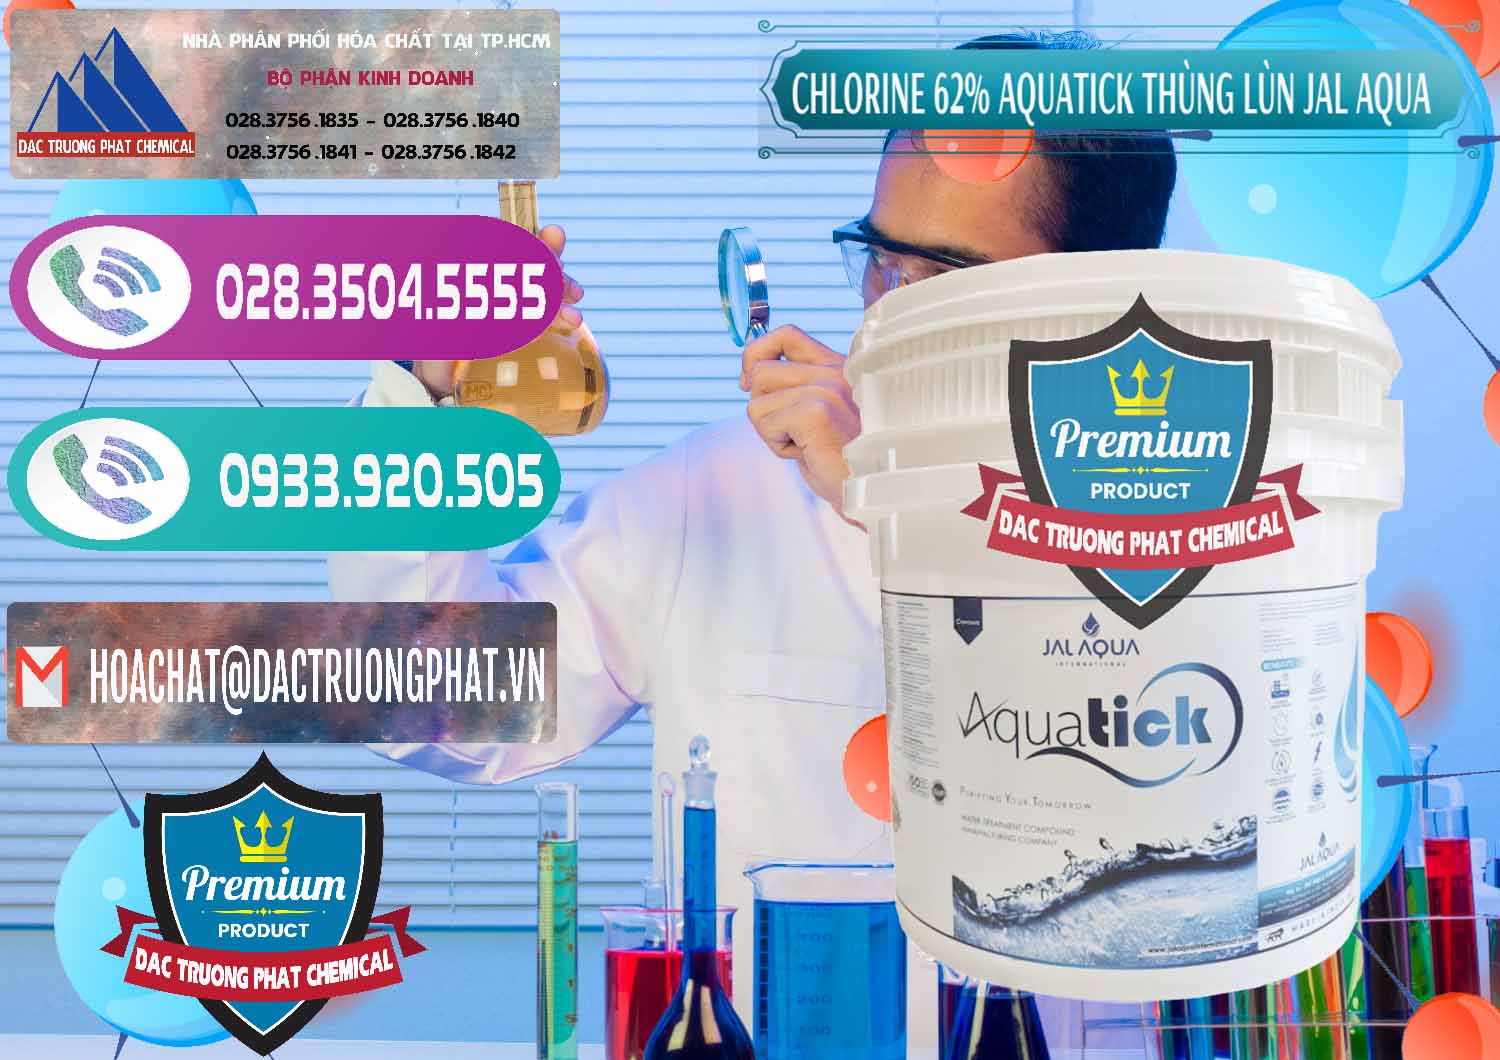 Nơi kinh doanh & bán Chlorine – Clorin 62% Aquatick Thùng Lùn Jal Aqua Ấn Độ India - 0238 - Đơn vị chuyên phân phối _ cung ứng hóa chất tại TP.HCM - hoachatxulynuoc.com